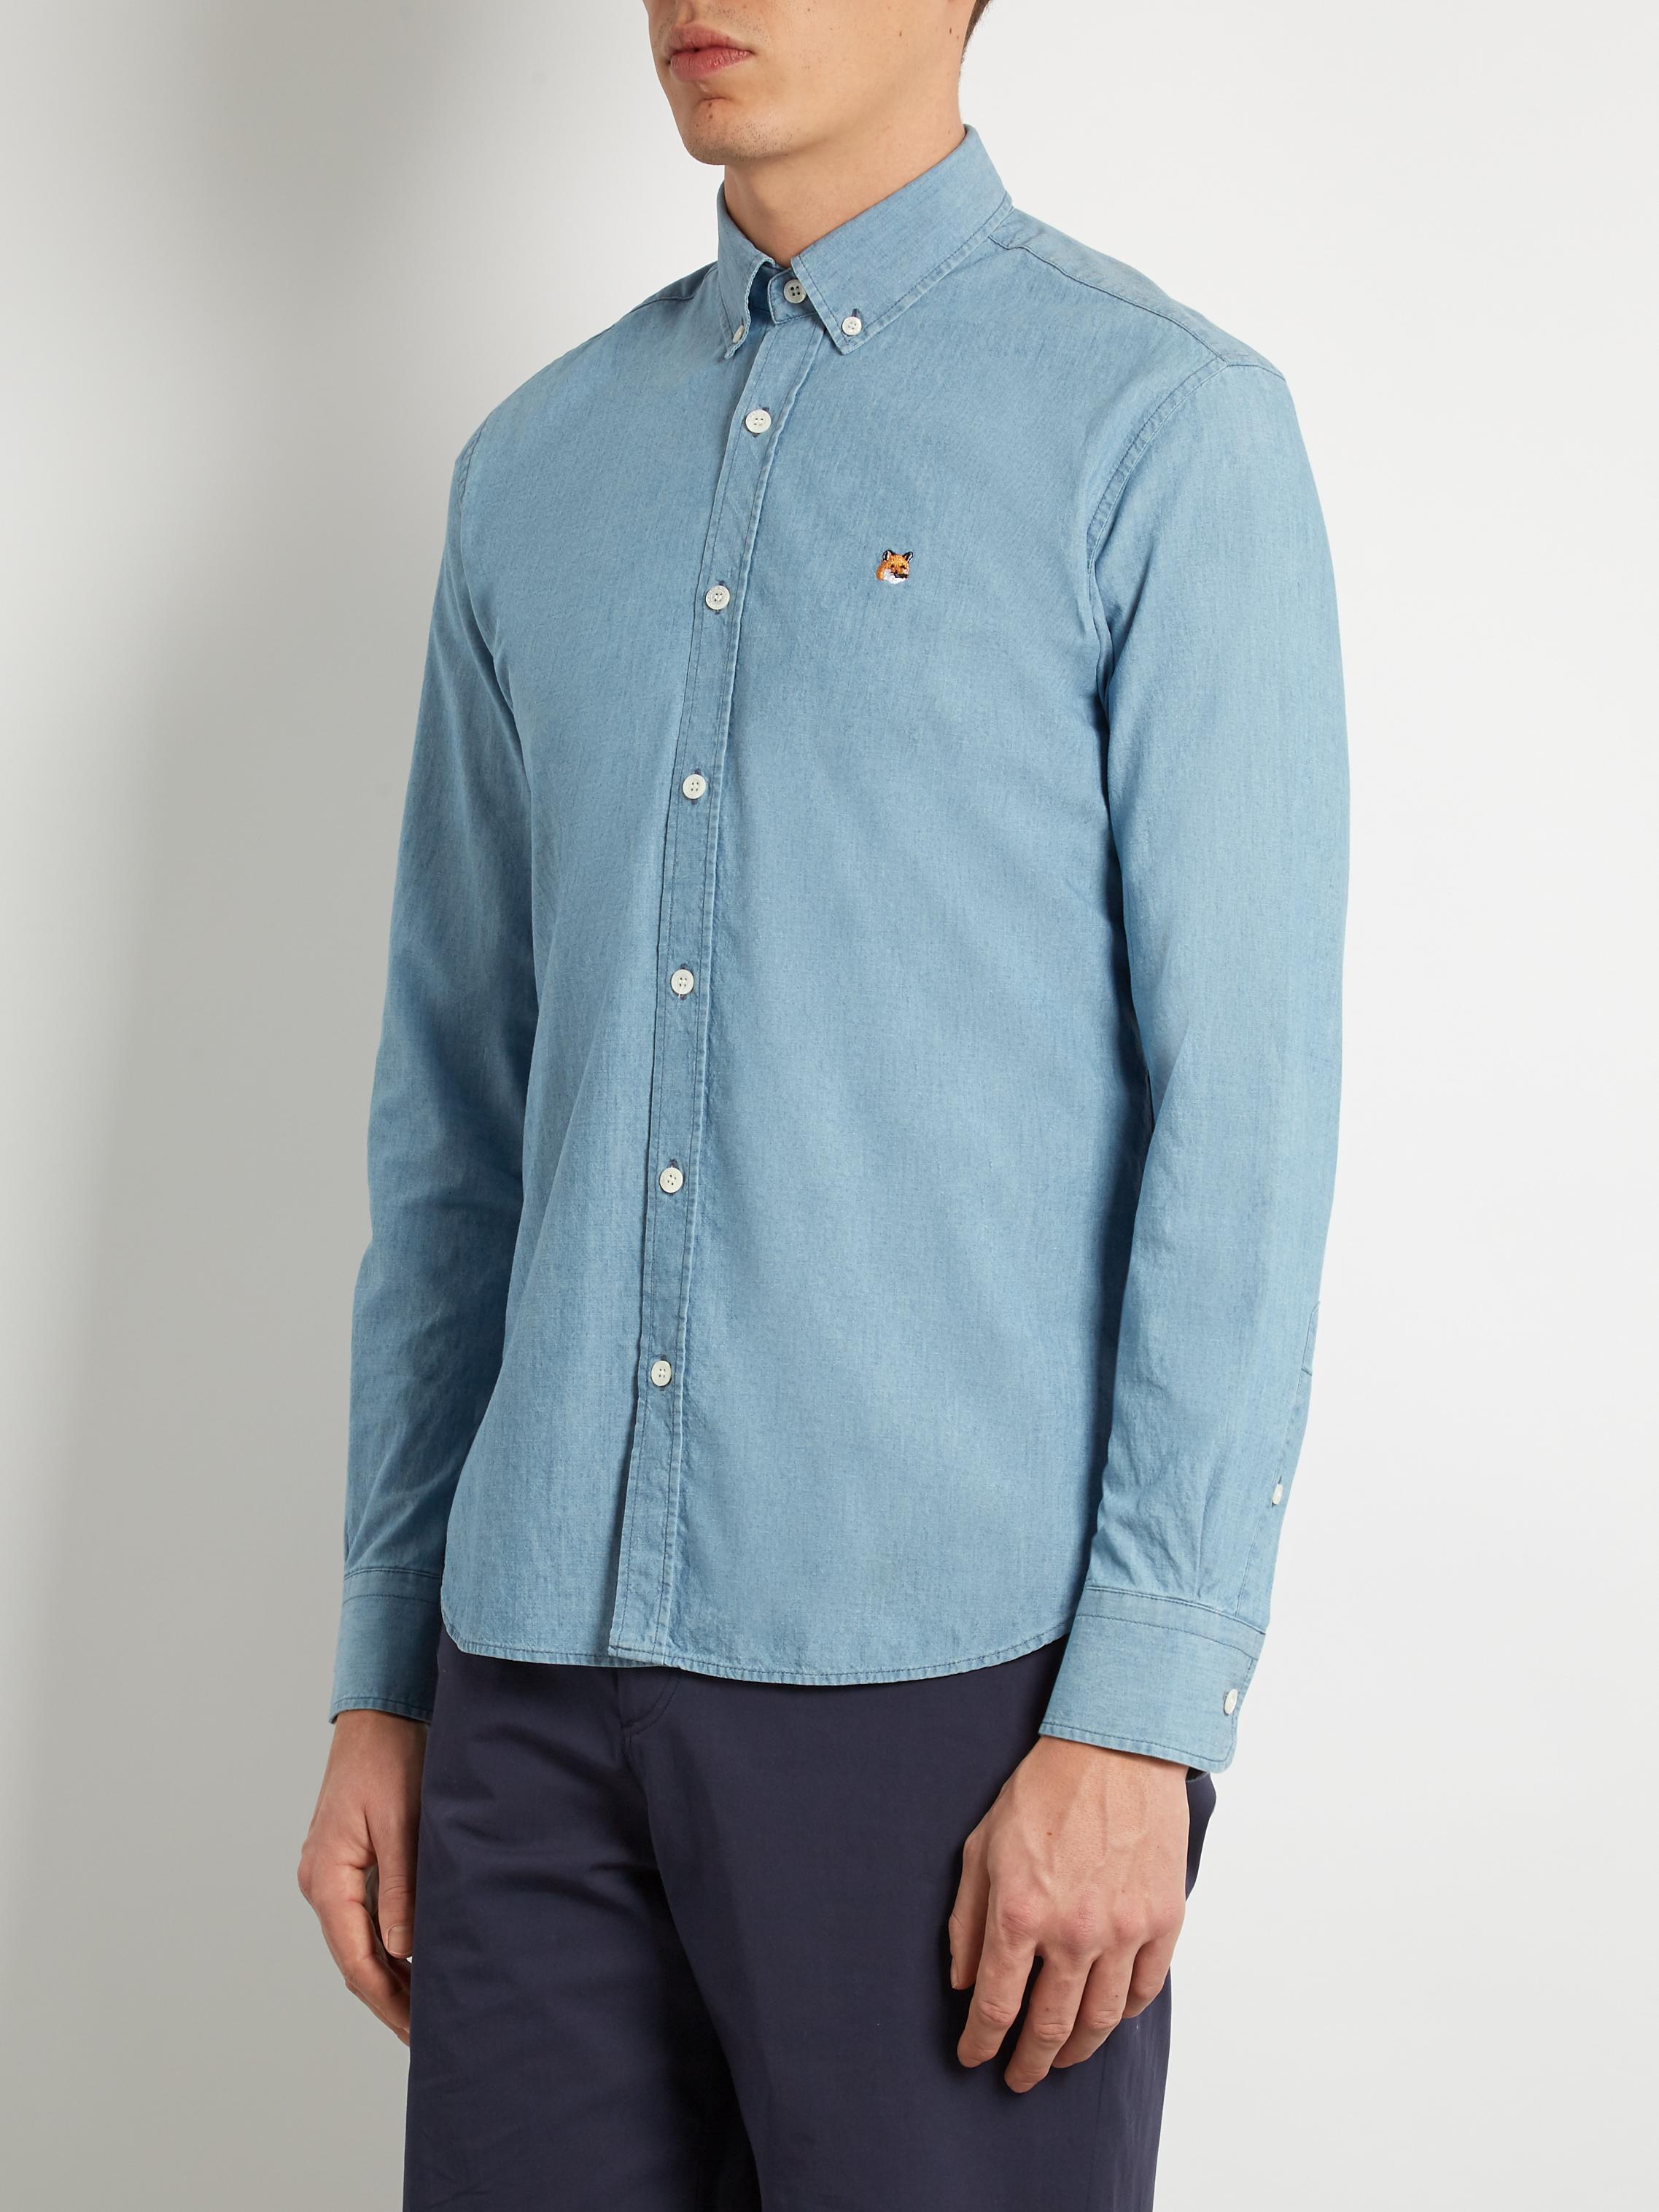 Maison Kitsuné Button-down Cotton Shirt in Blue for Men - Lyst